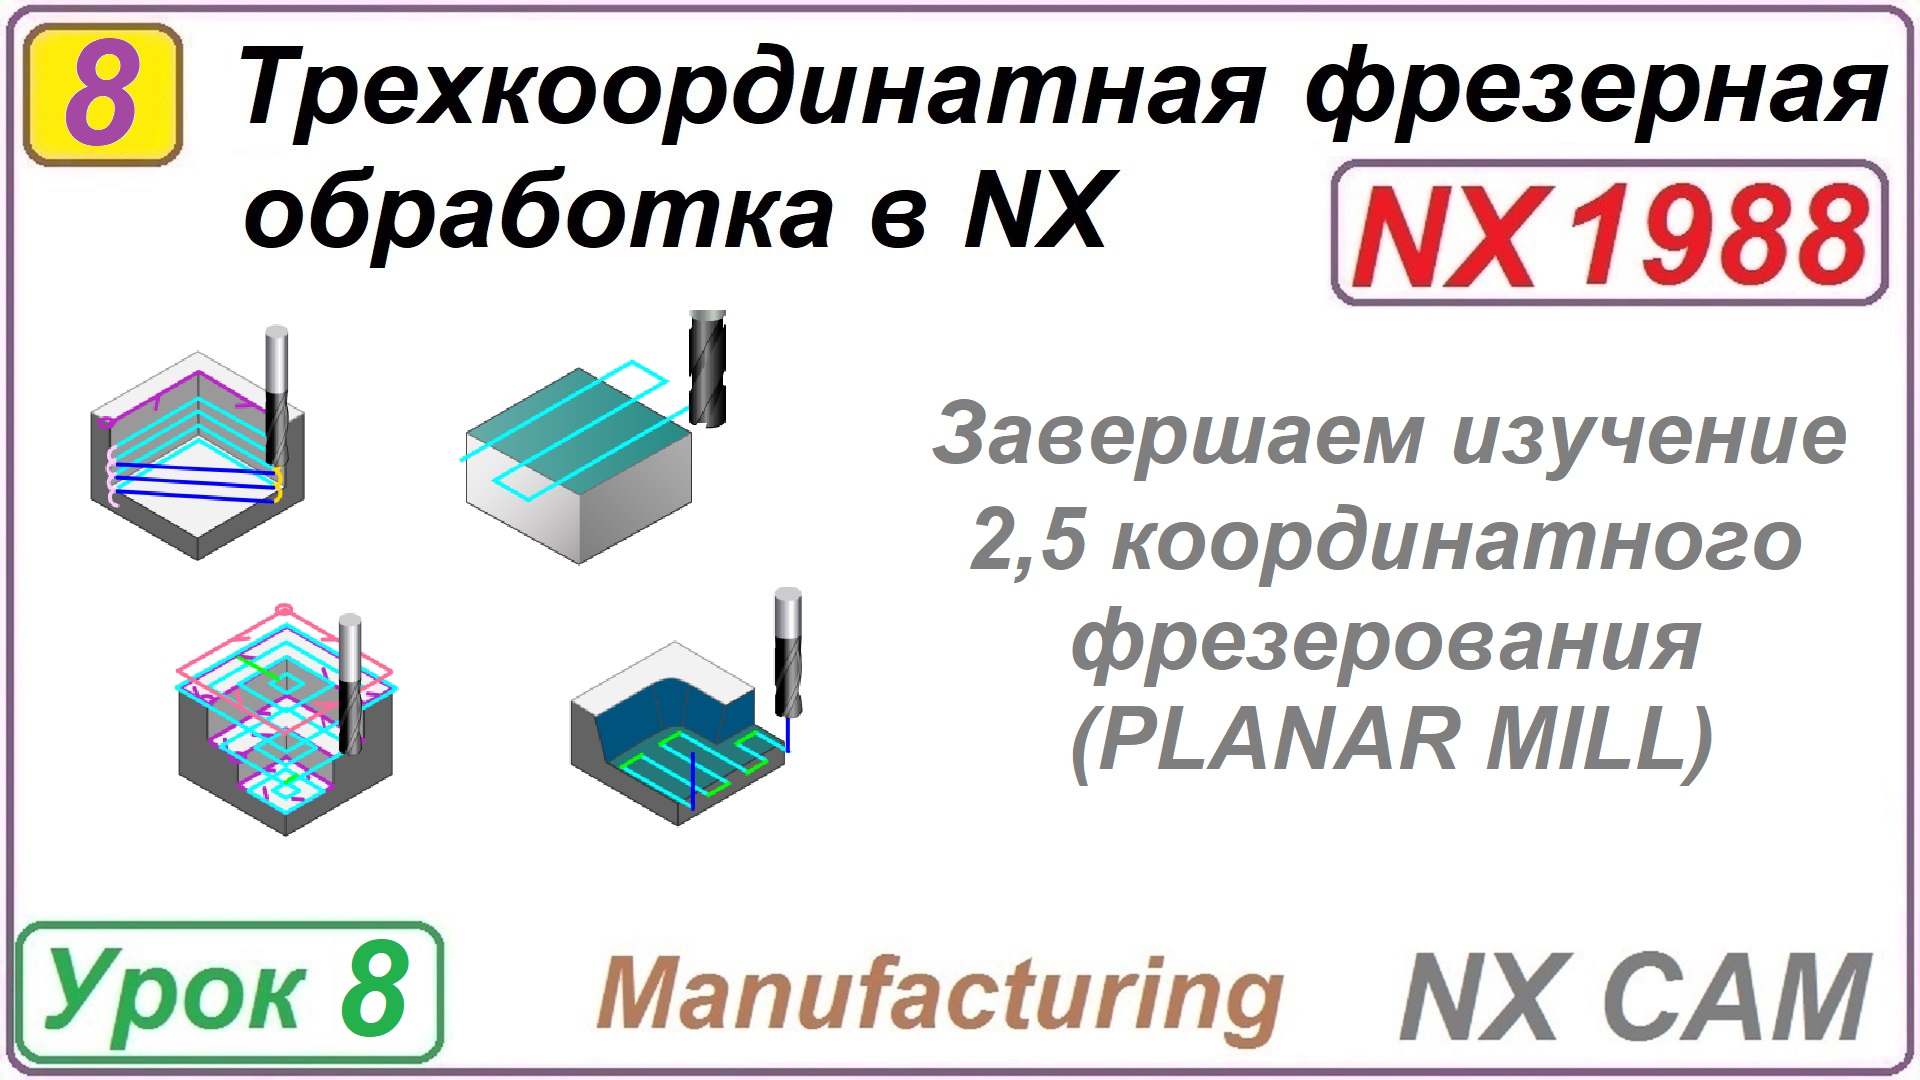 Трехкоординатная фрезерная обработка в NX. Урок 8. Подводим итоги по разделу mill planar